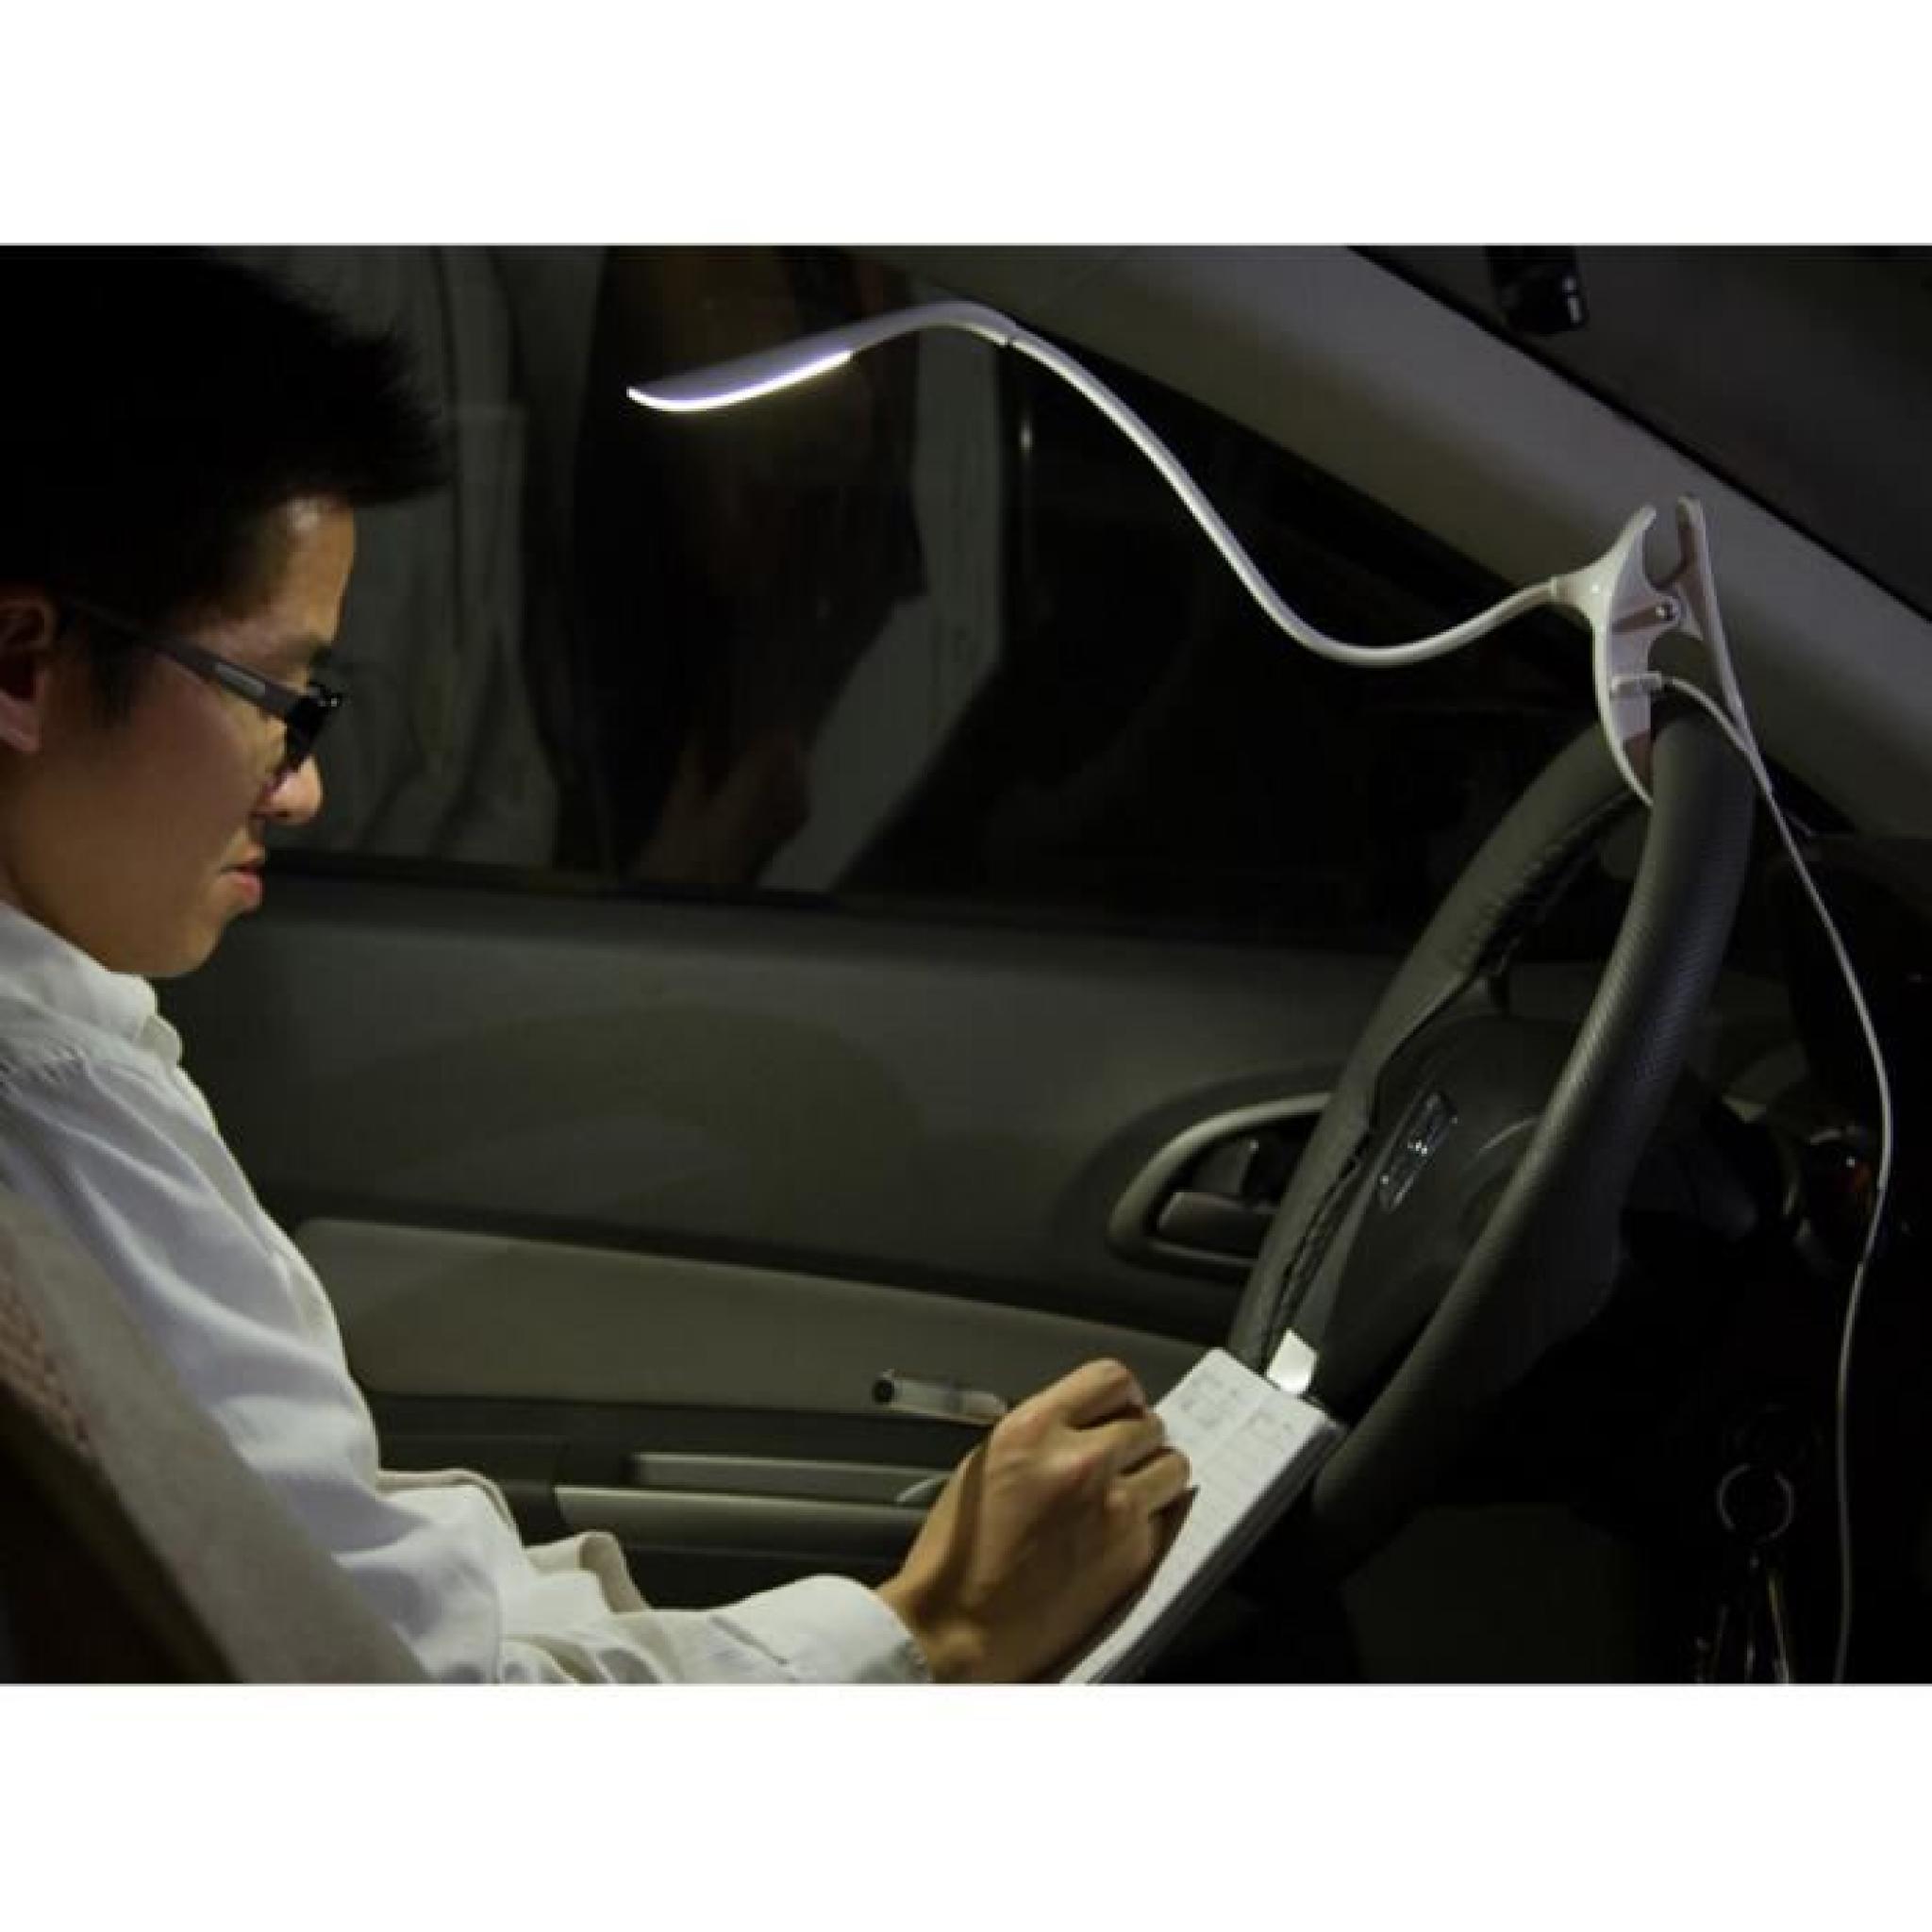 LED Flexible Light Reading Clip-on Table de lit Bureau d'étude de la lampe côté pas cher